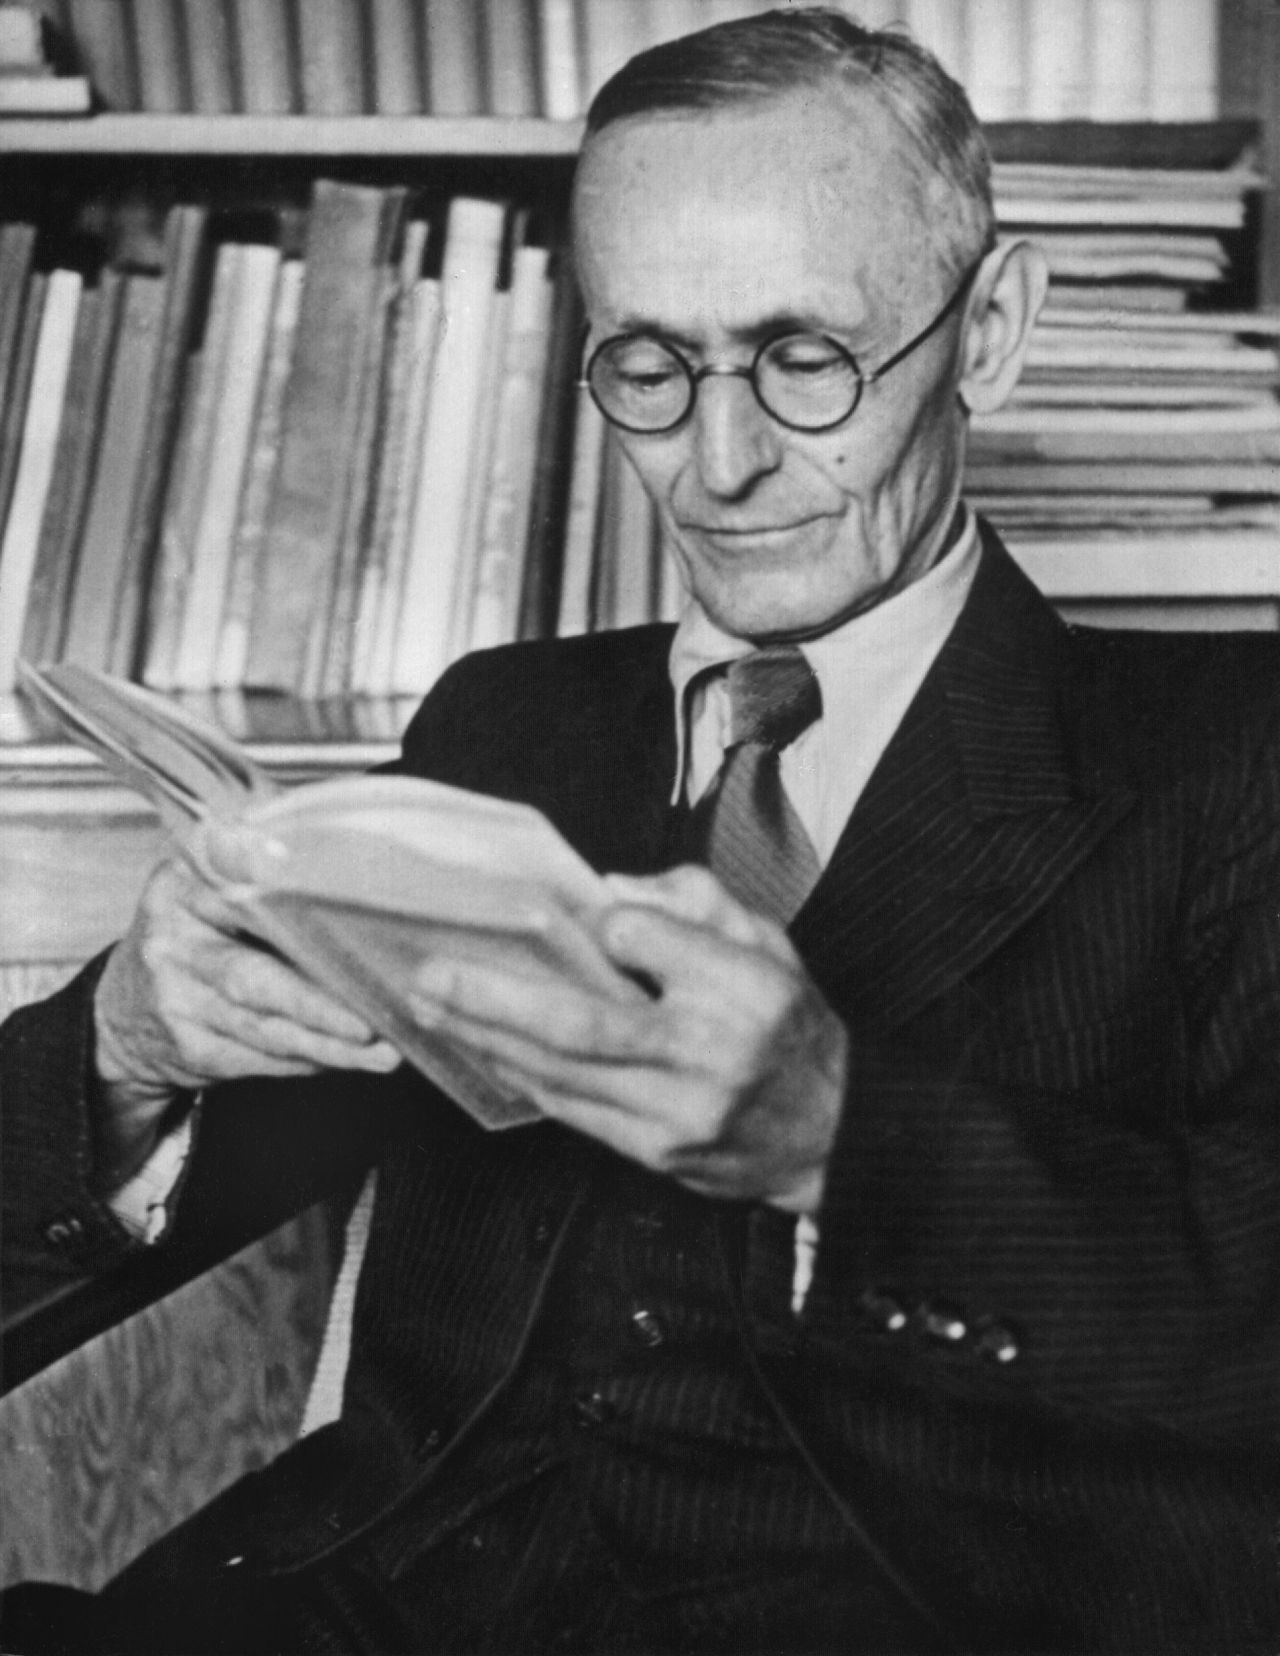 Der Schriftsteller Hermann Hesse (1877-1962) blieb einmal sitzen und verließ das Gymnasium mit dem Abschluss der mittleren Reife. Für seine weltberühmten Werke wie "Das Glasperlenspiel" erhielt er 1946 den Literatur-Nobelpreis.